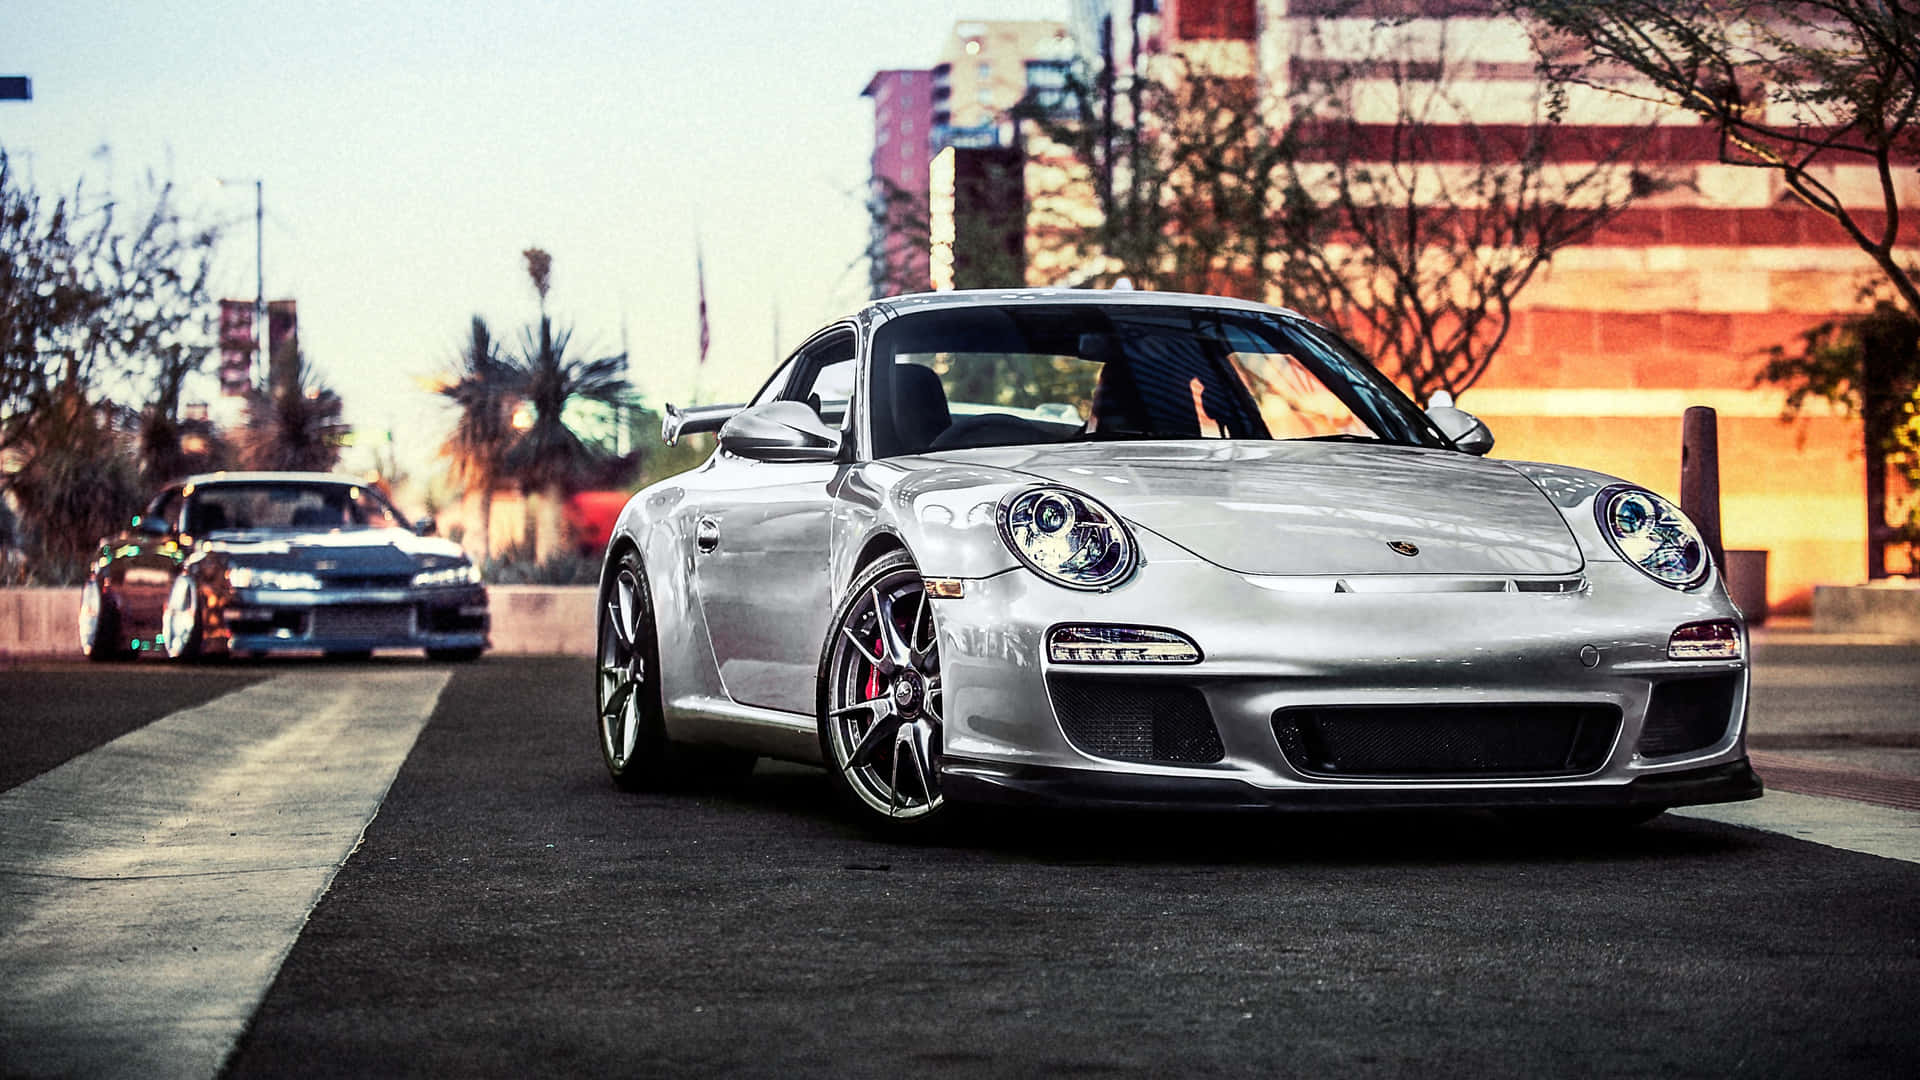 A Beautiful Porsche 911 In 4k Ultra Hd. Background